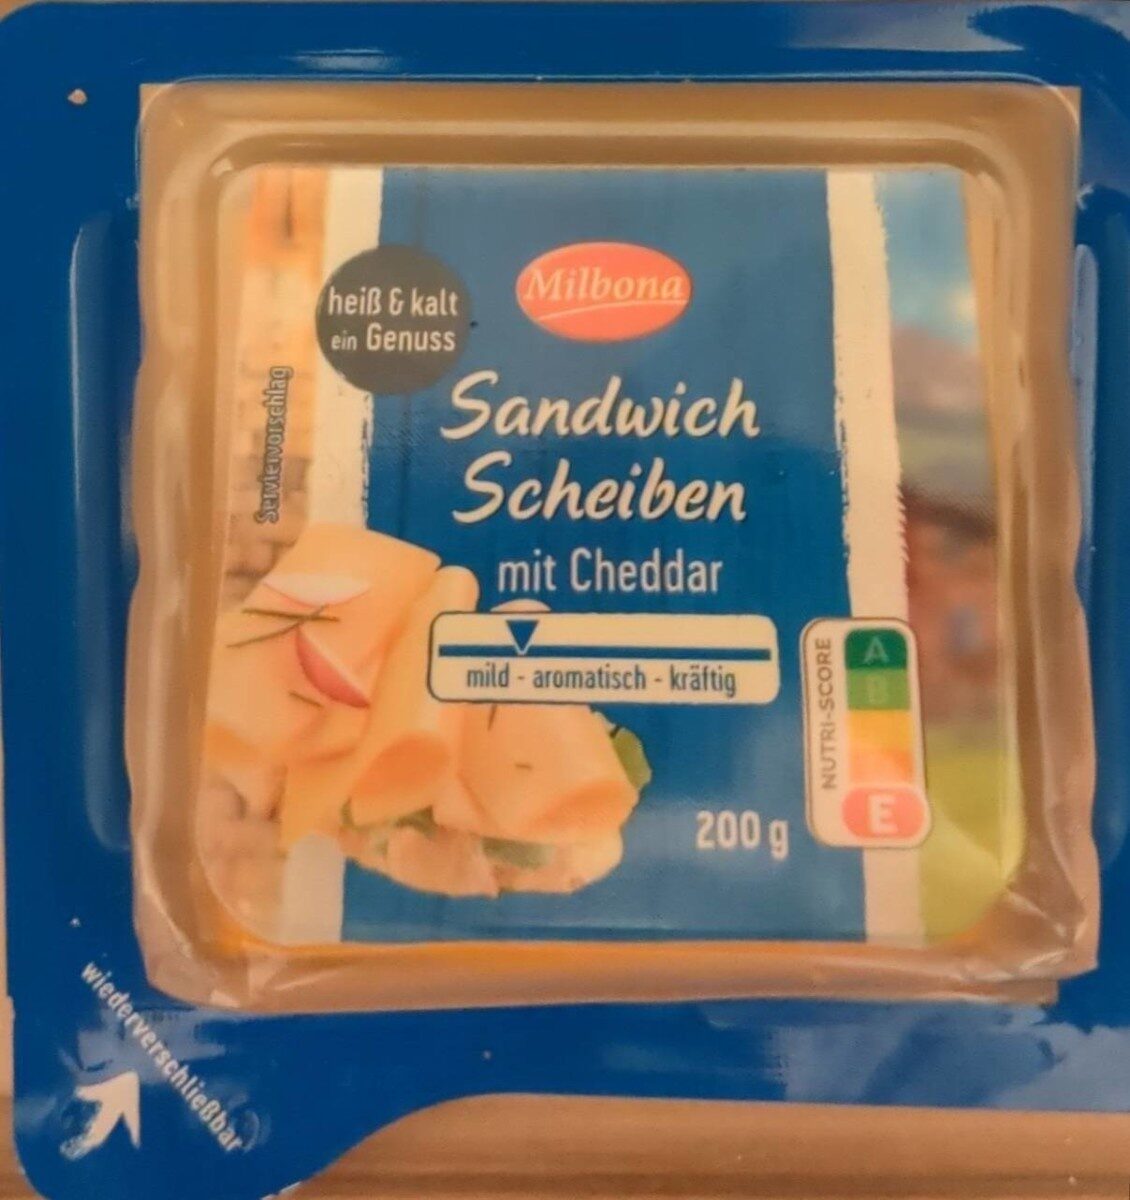 Sandwich Schreiben mit Cheddar - Milbona 1pcs 